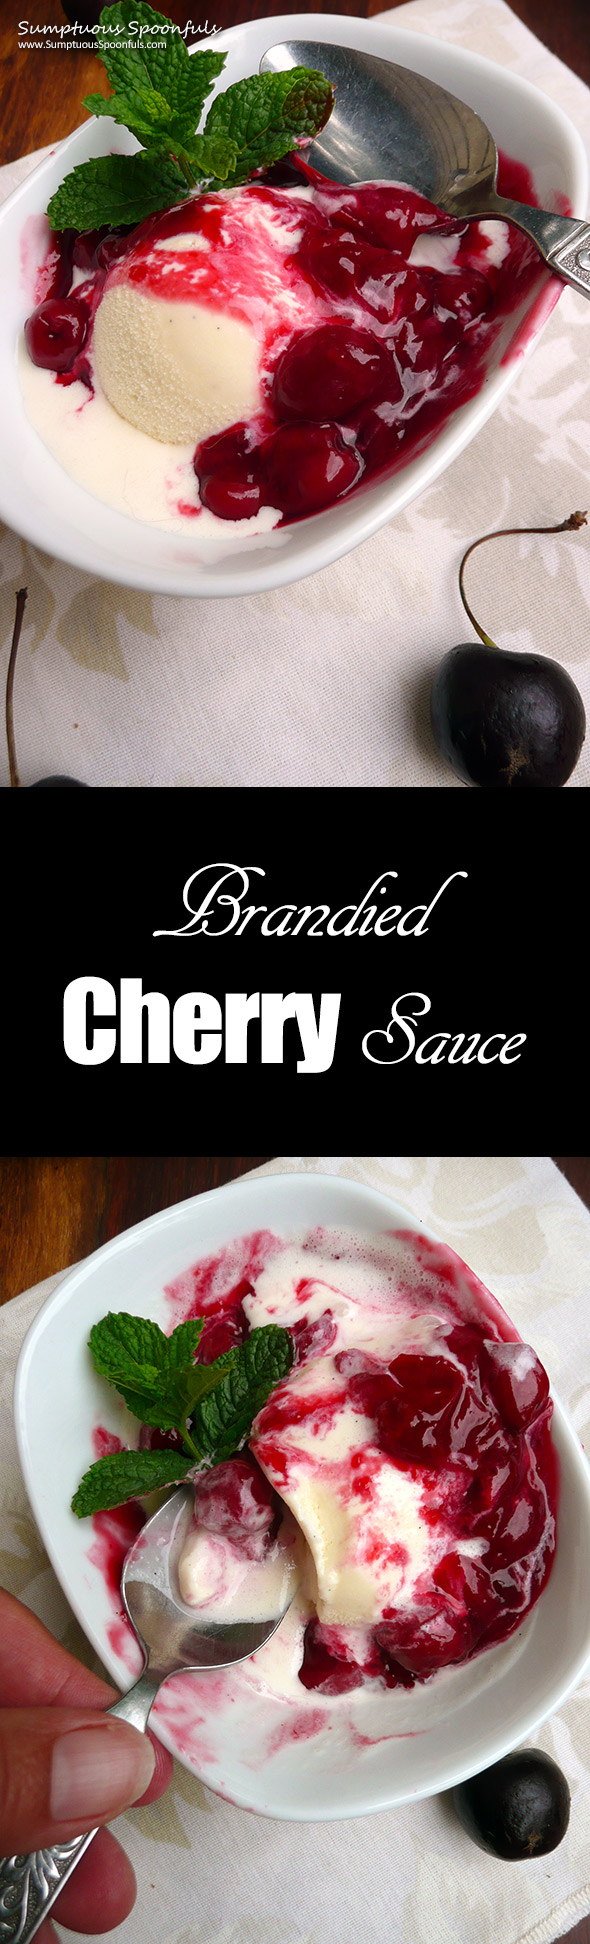 Brandied Cherry Sauce ~ Sumptuous Spoonfuls #easy #elegant #tartcherry #dessert #recipe 